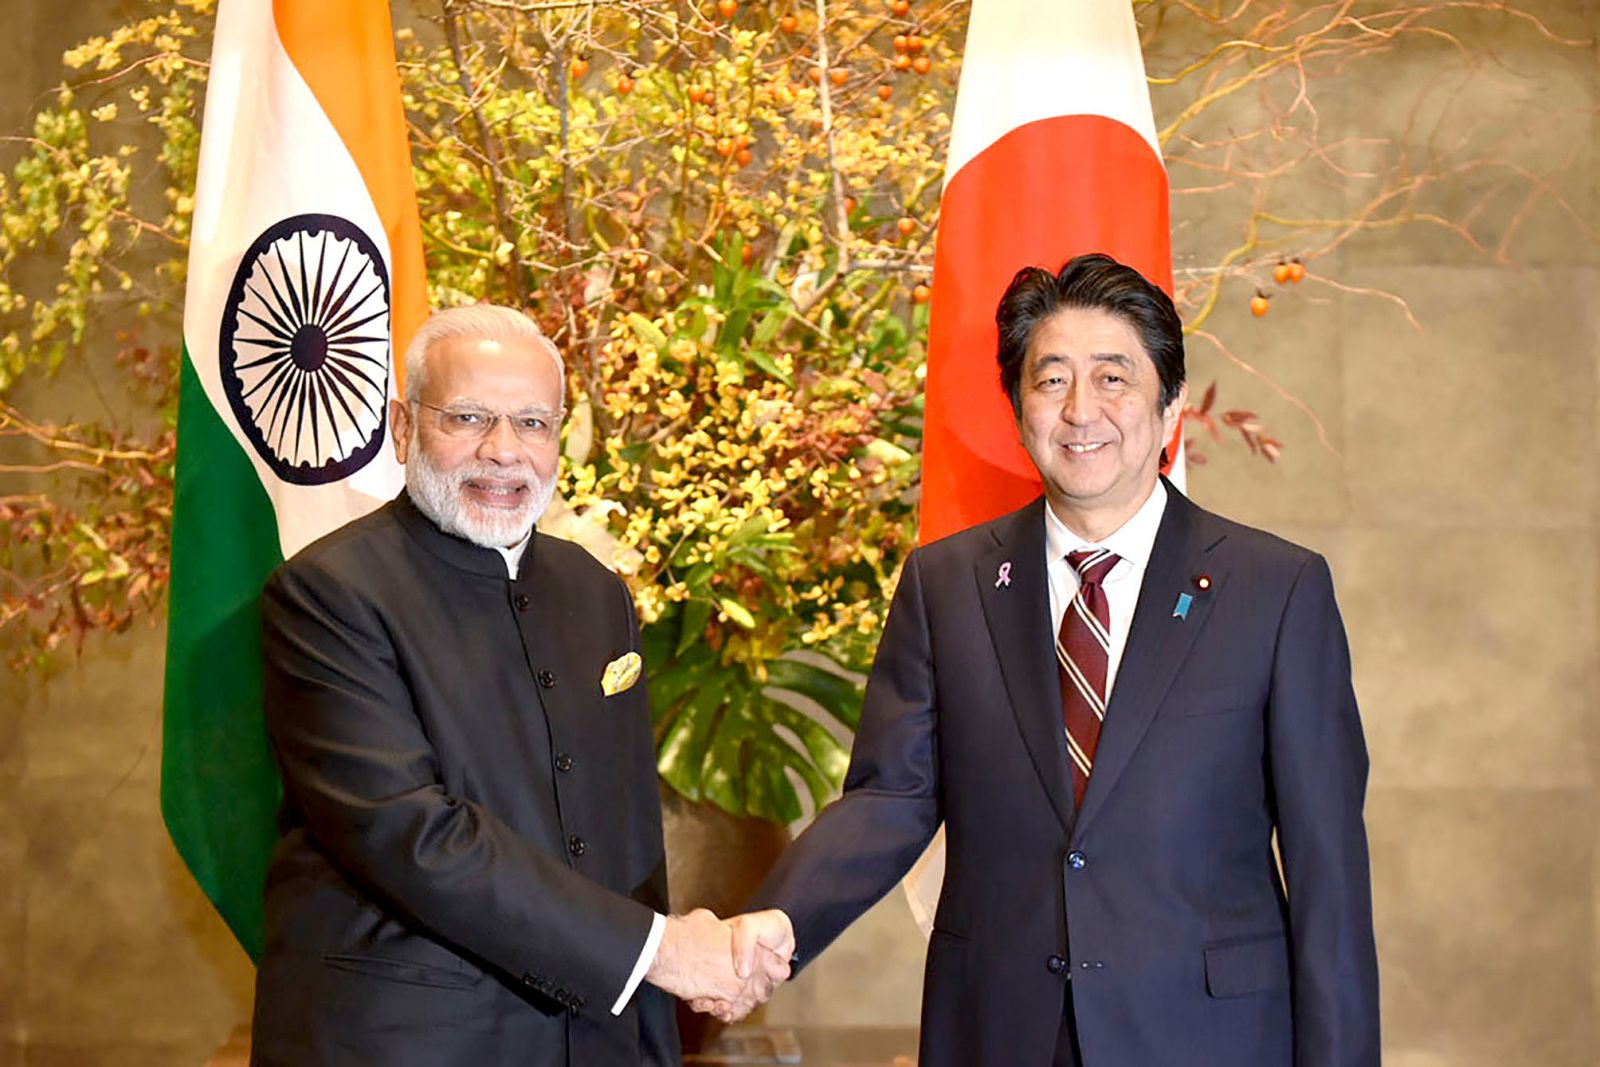 Thủ tướng Nhật Bản Shinzo Abe (phải) tiếp người đồng cấp Ấn Độ Narendra Modi tại Tokyo hồi tháng 11-2016. Ảnh: Aljazeera